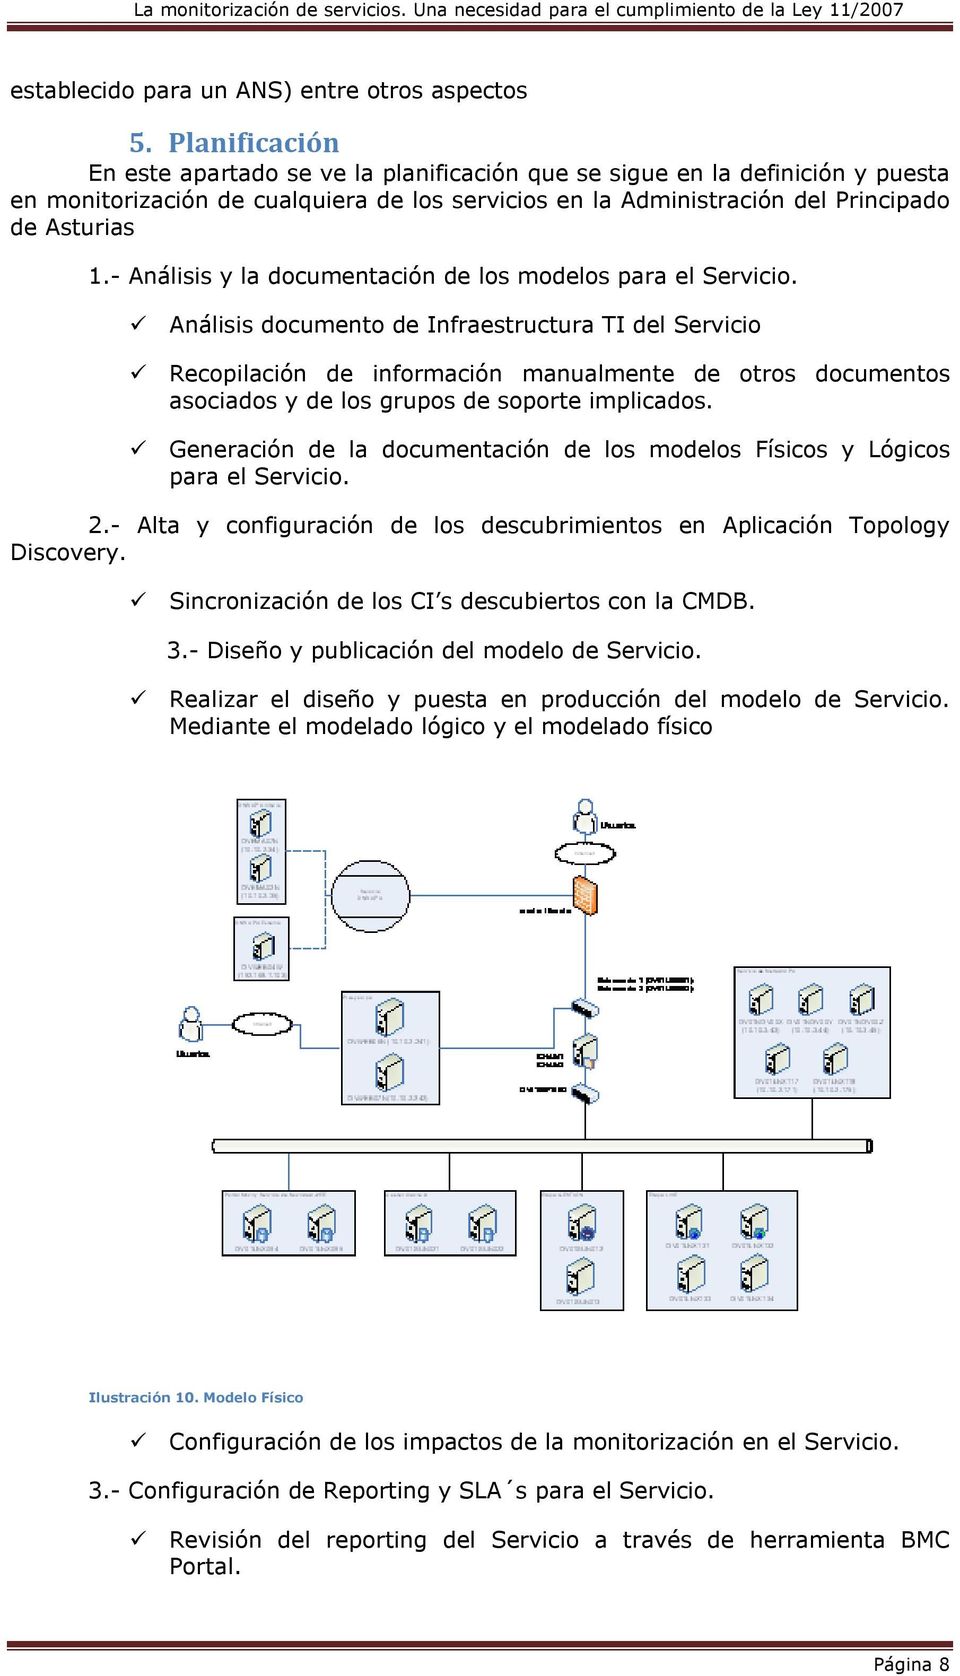 - Análisis y la documentación de los modelos para el Servicio.